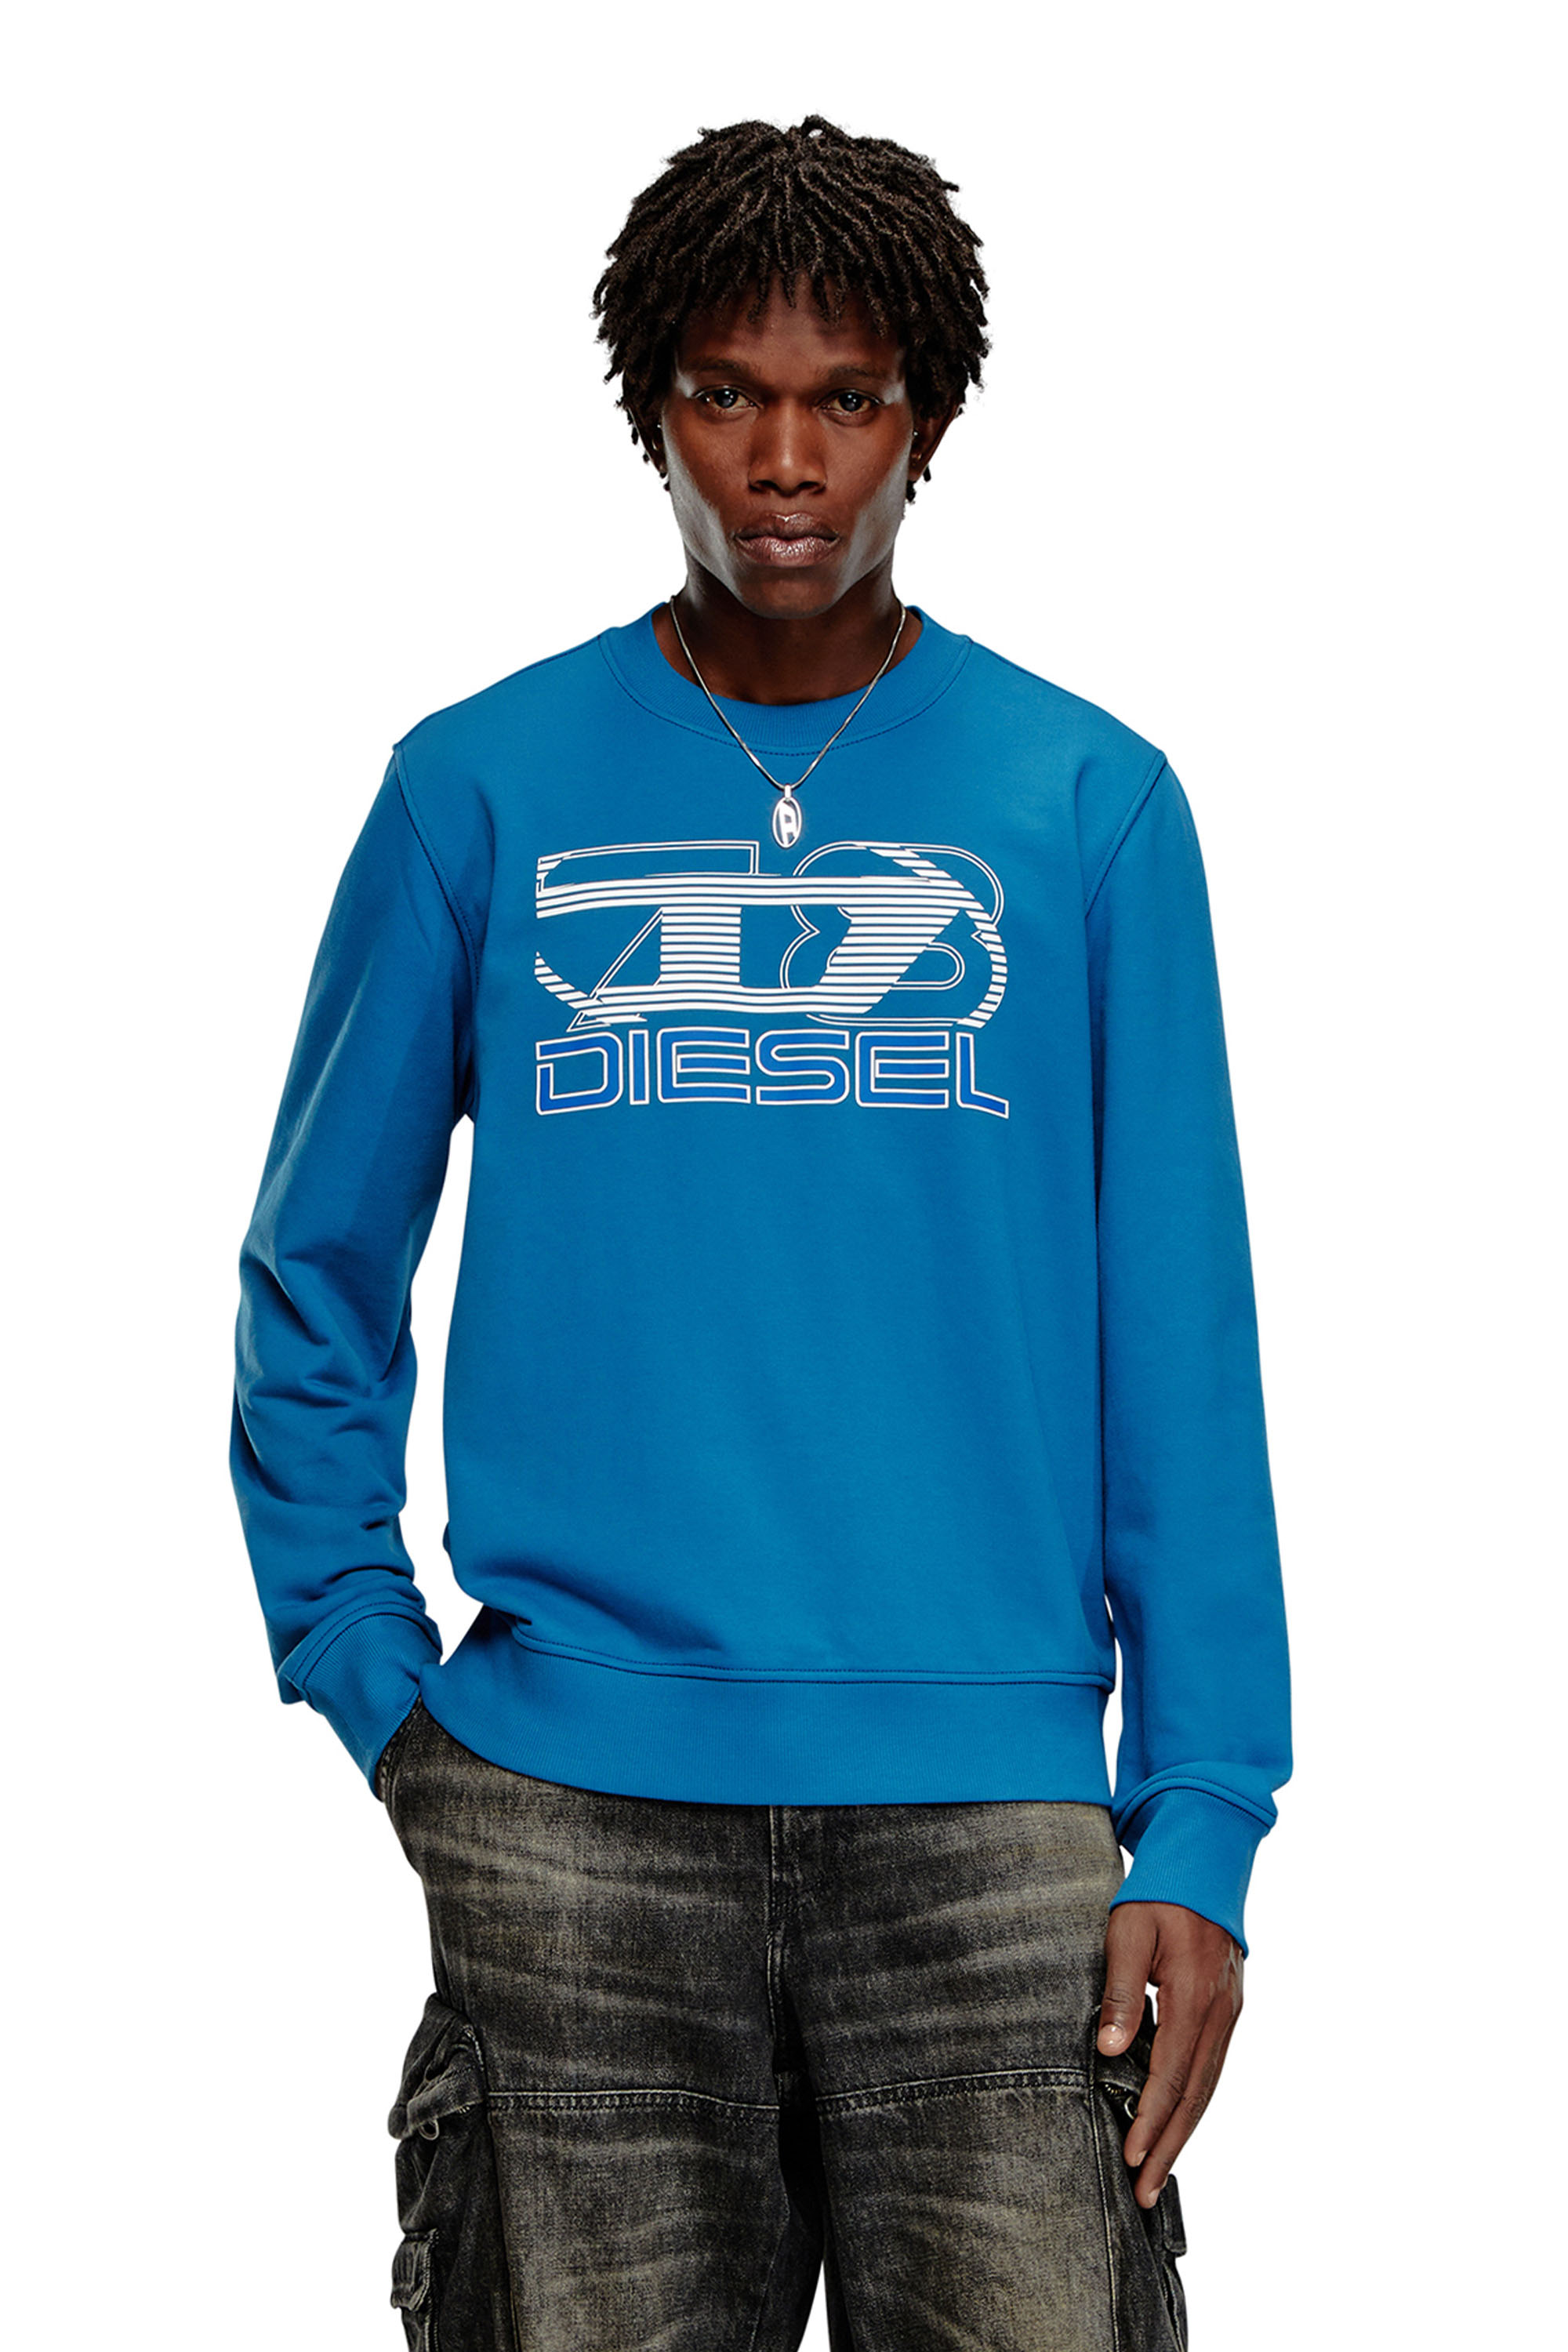 Diesel - Sweat-shirt avec logo imprimé - Pull Cotton - Homme - Bleu